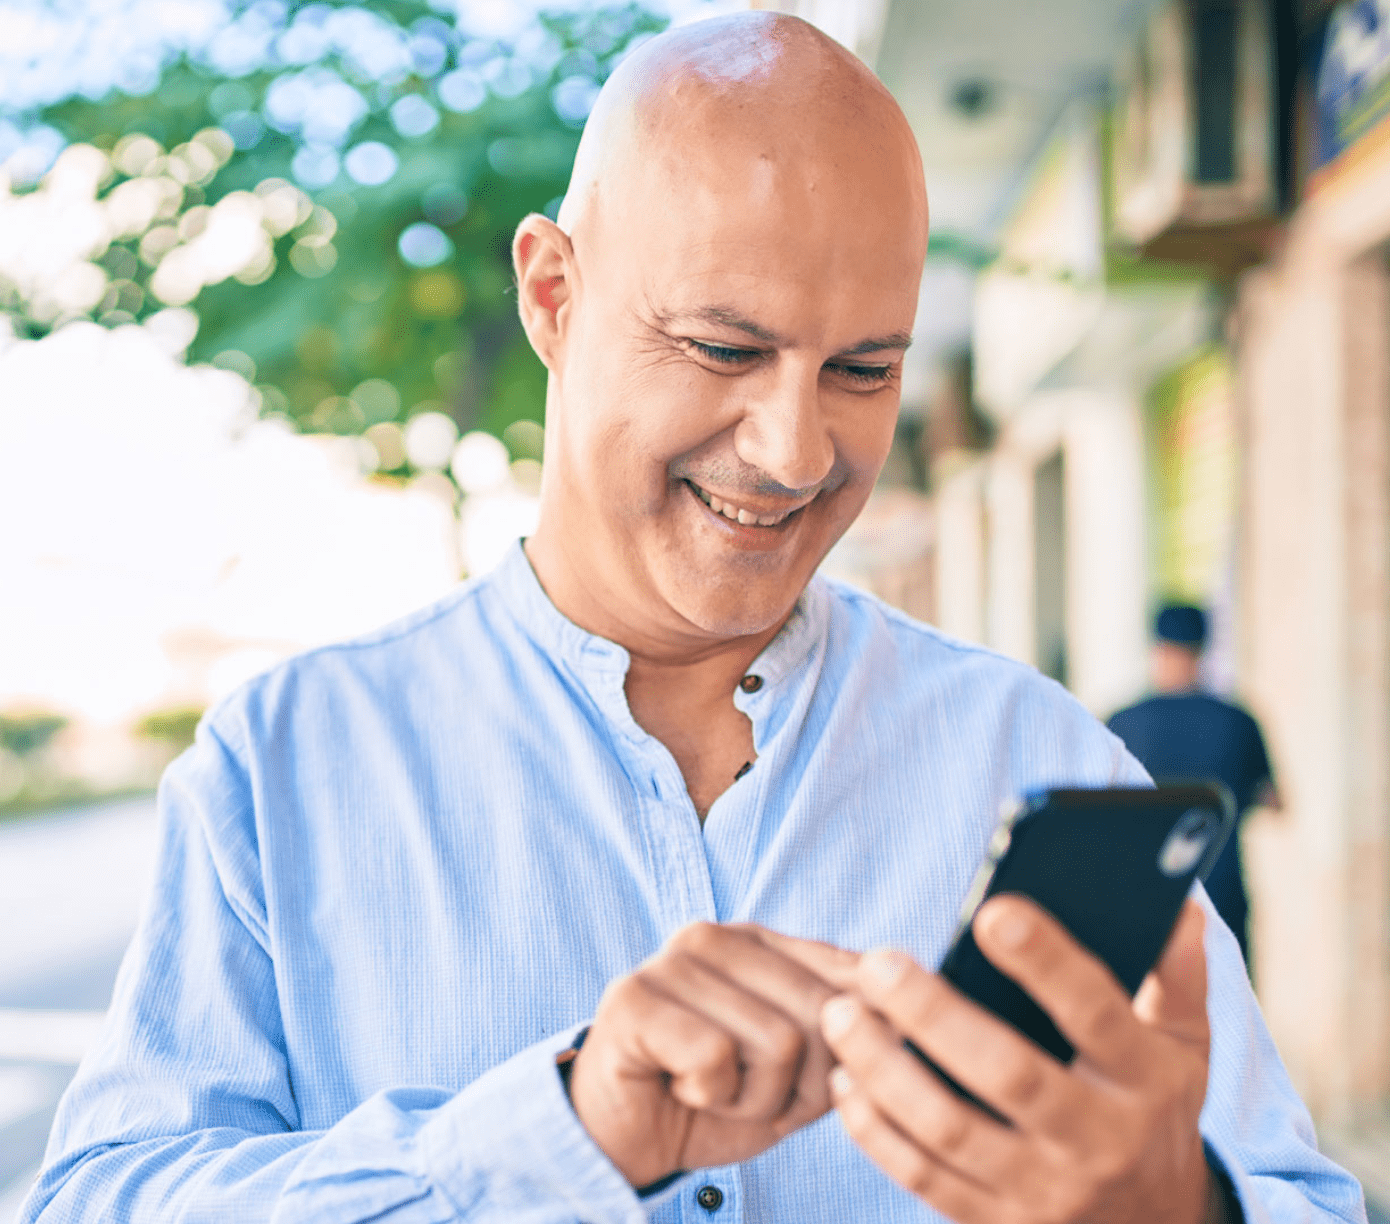 Este hombre de camisa azul es miembro de Alianza y disfruta hacer sus operaciones bancarias desde su teléfono celular a través de la banca móvil